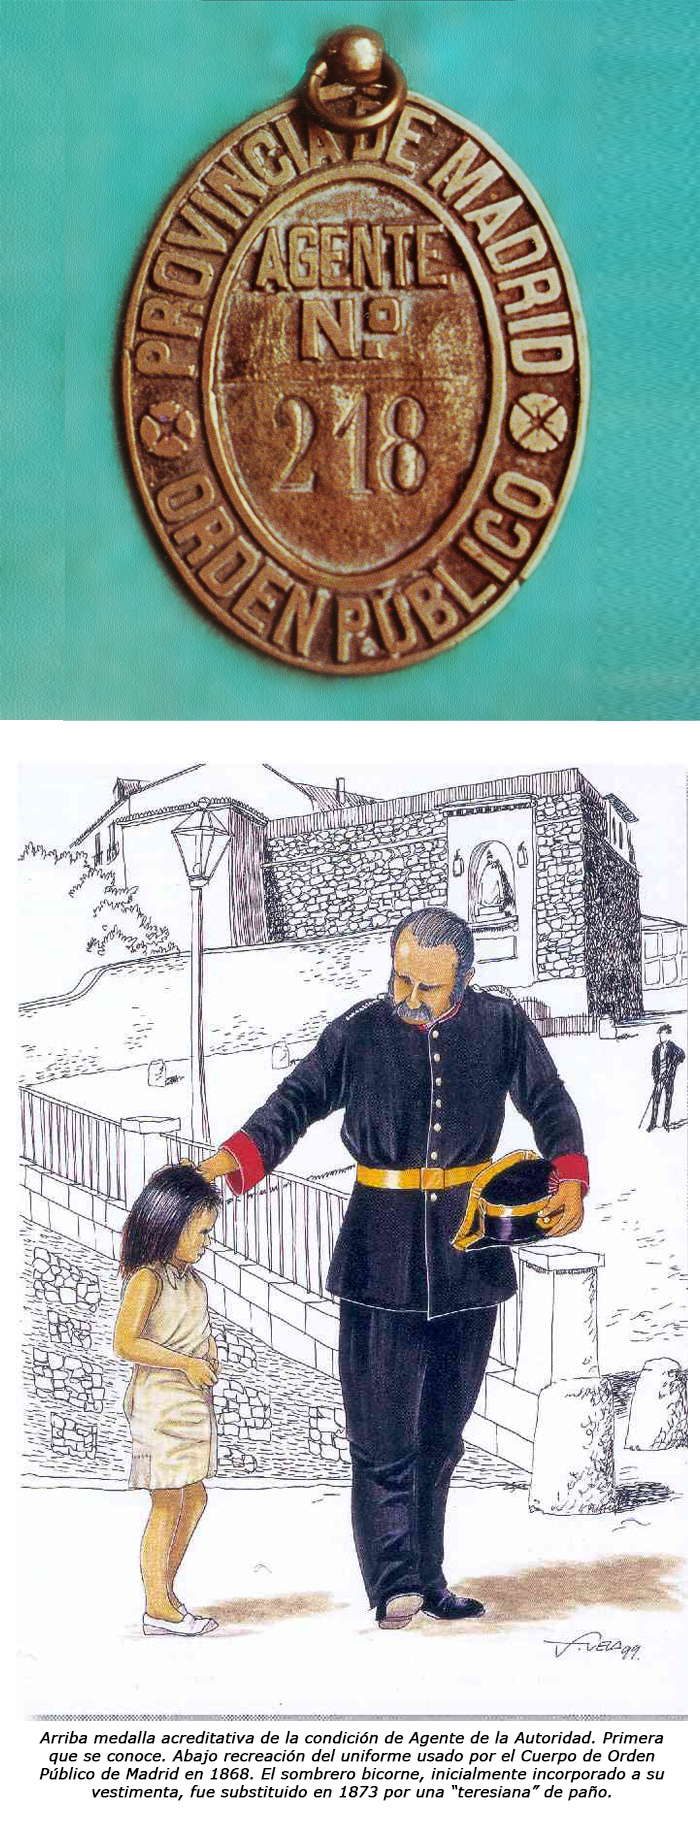 medalla acreditativa de la condición de Agente de la Autoridad. Recreación del uniforme usado por el Cuerpo de Orden Público de Madrid en 1968.